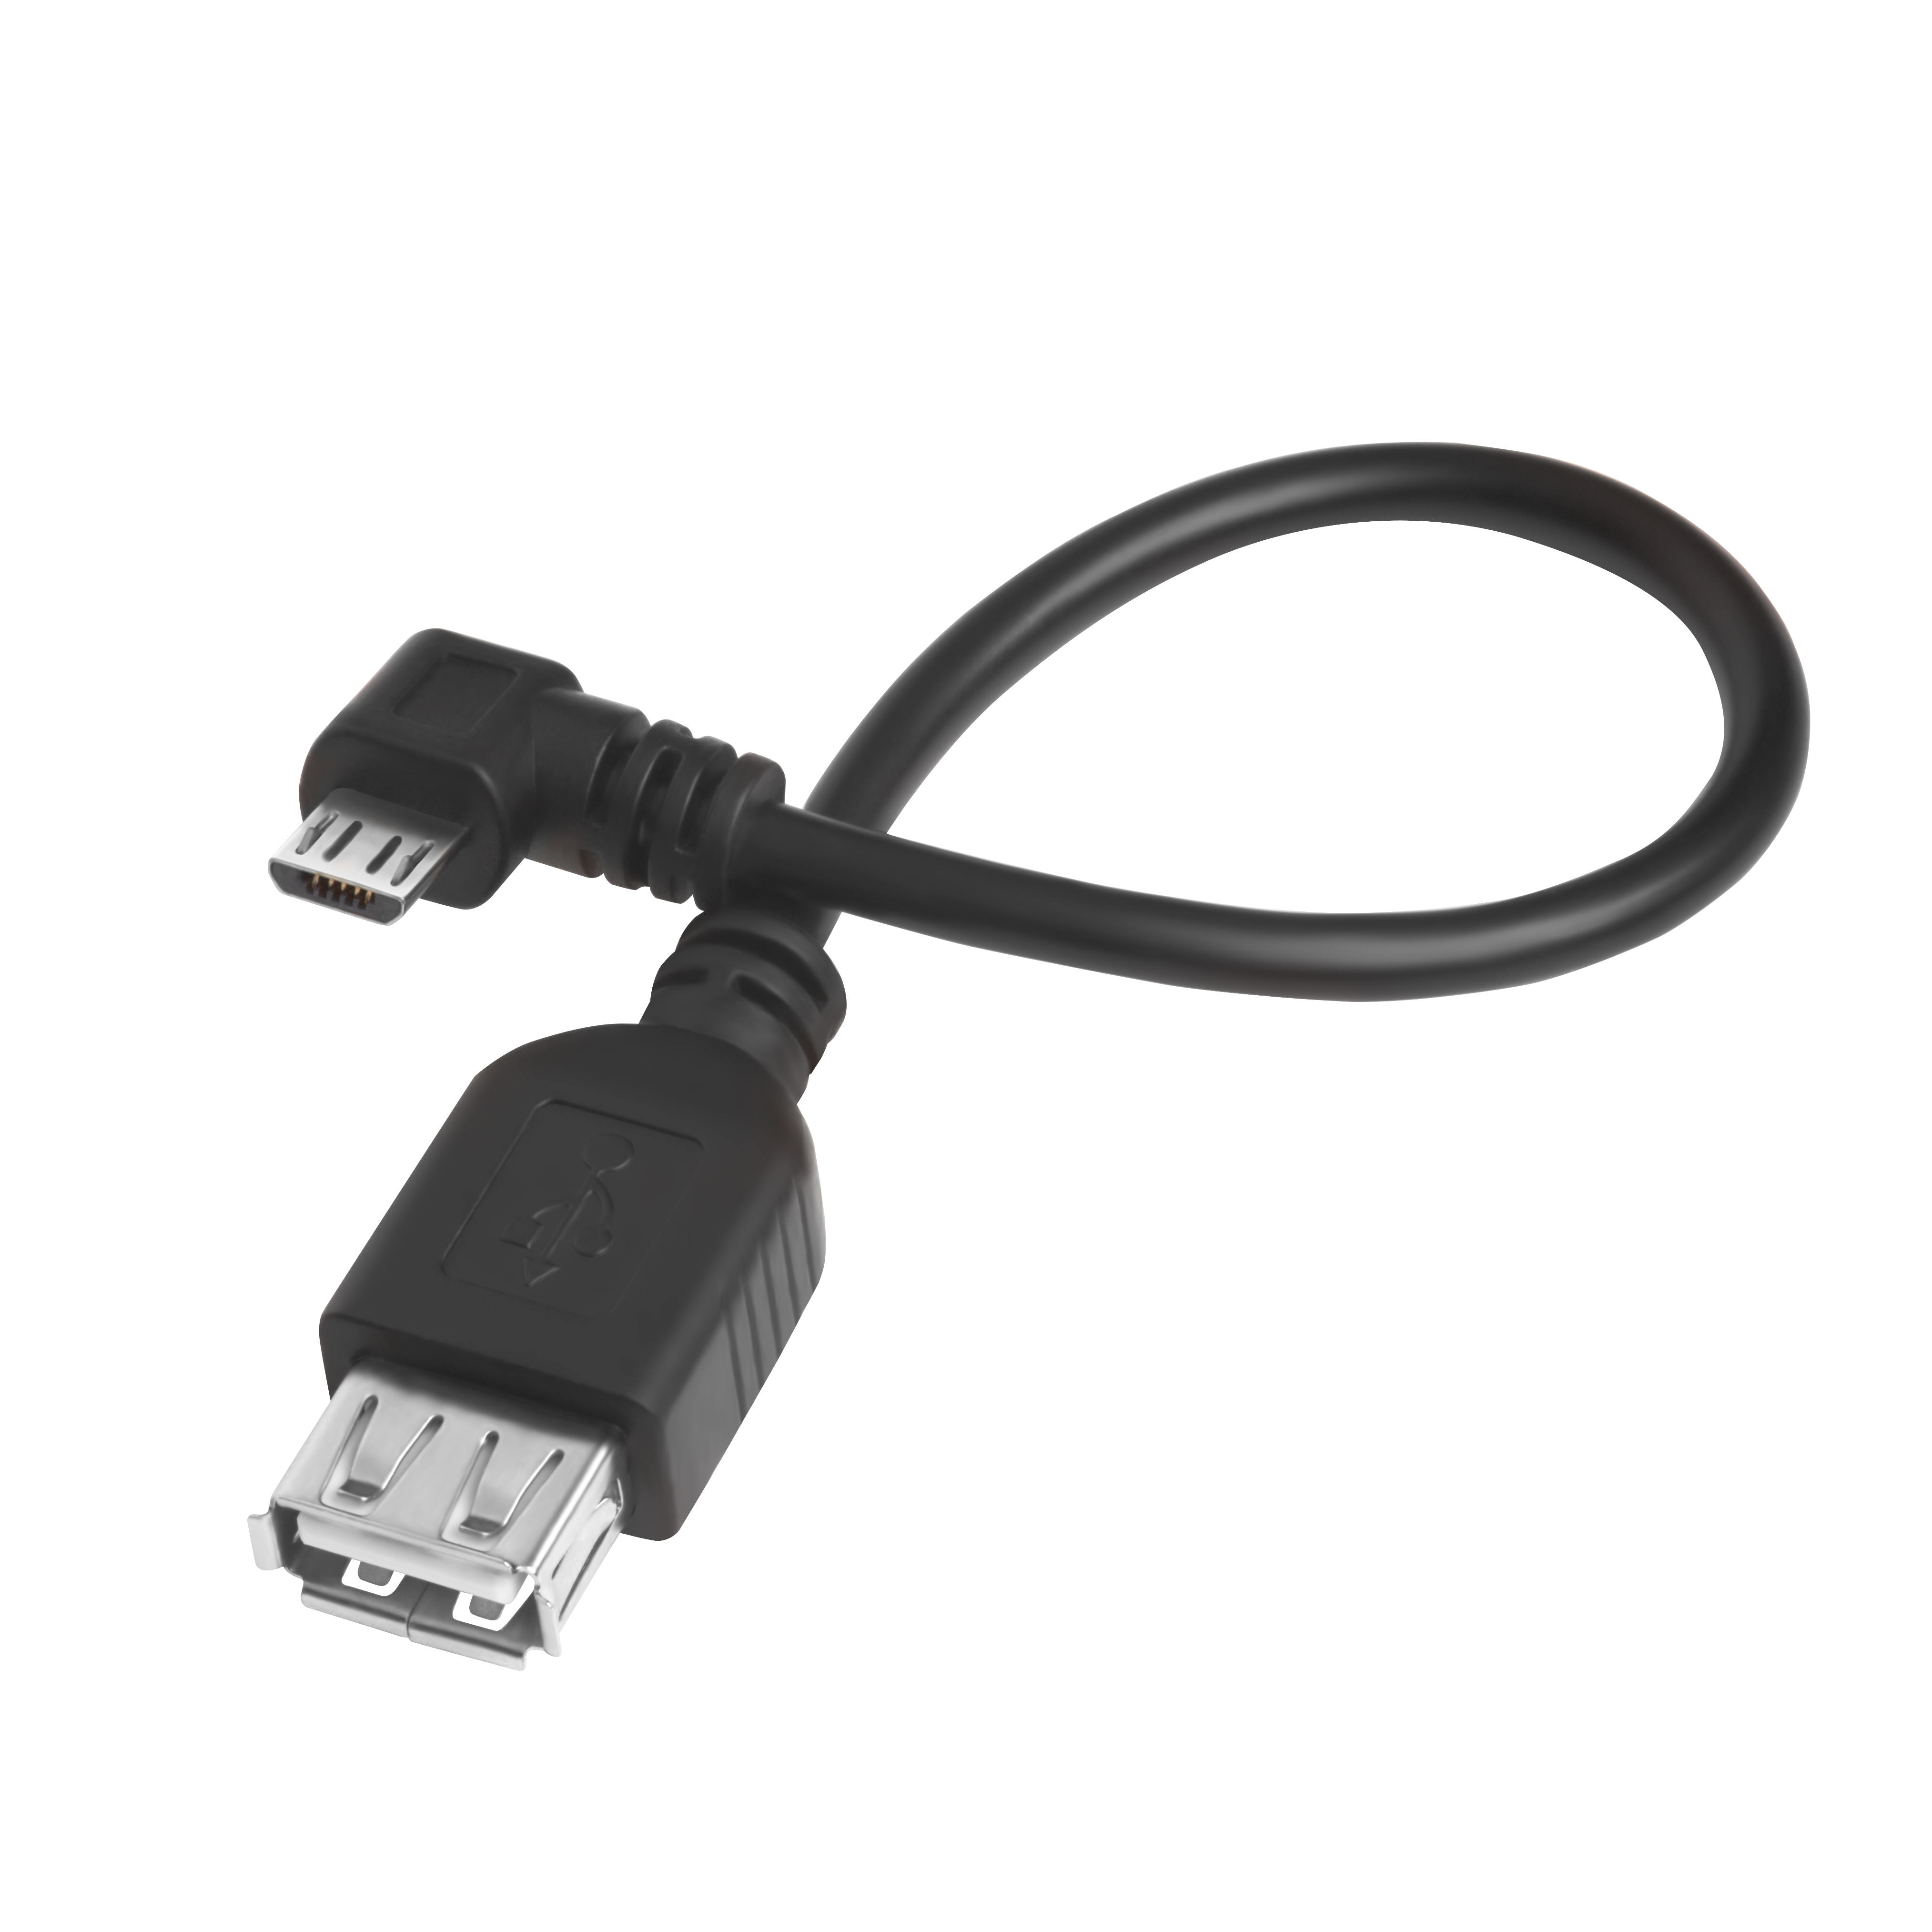 Адаптер переходник OTG micro B / USB AF  GCR-AMB1AF-BB2S-1.5m для подключения к планшету USB устройств, 1.5 м